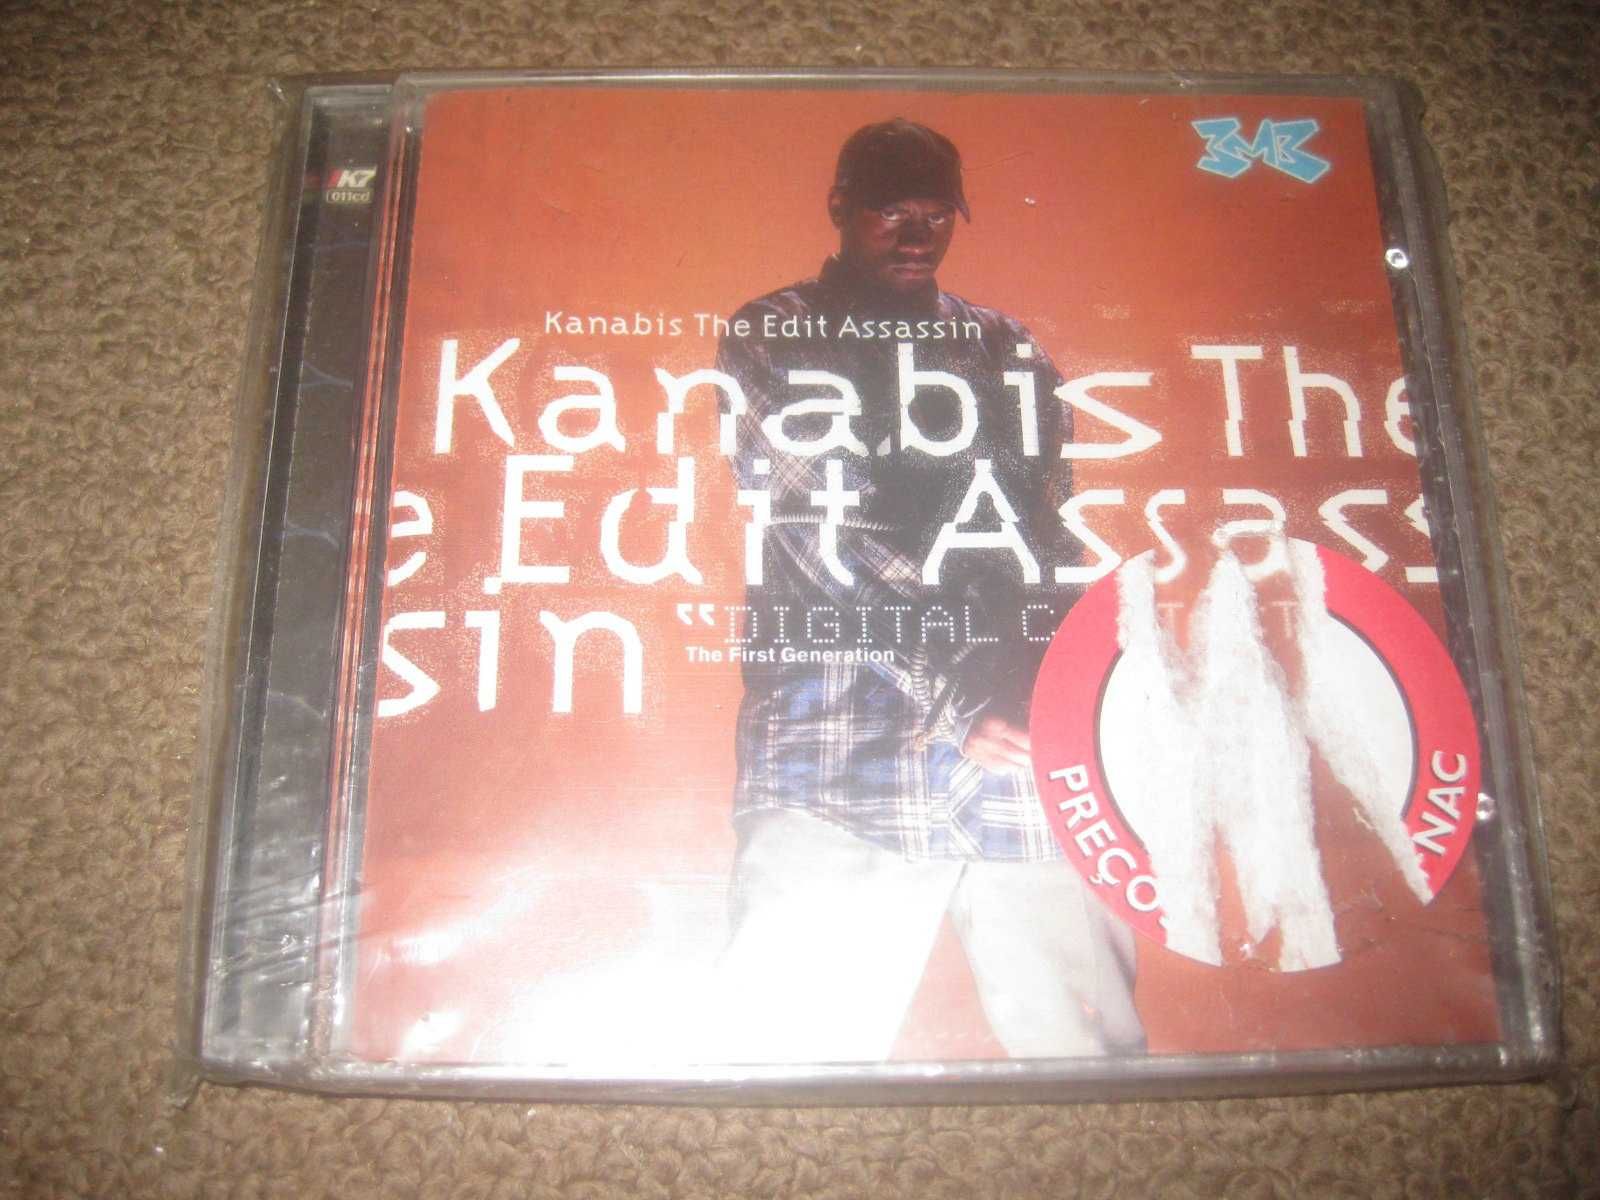 CD do Kanabis The Edit Assassin "Digital Contact" Selado/Portes Grátis